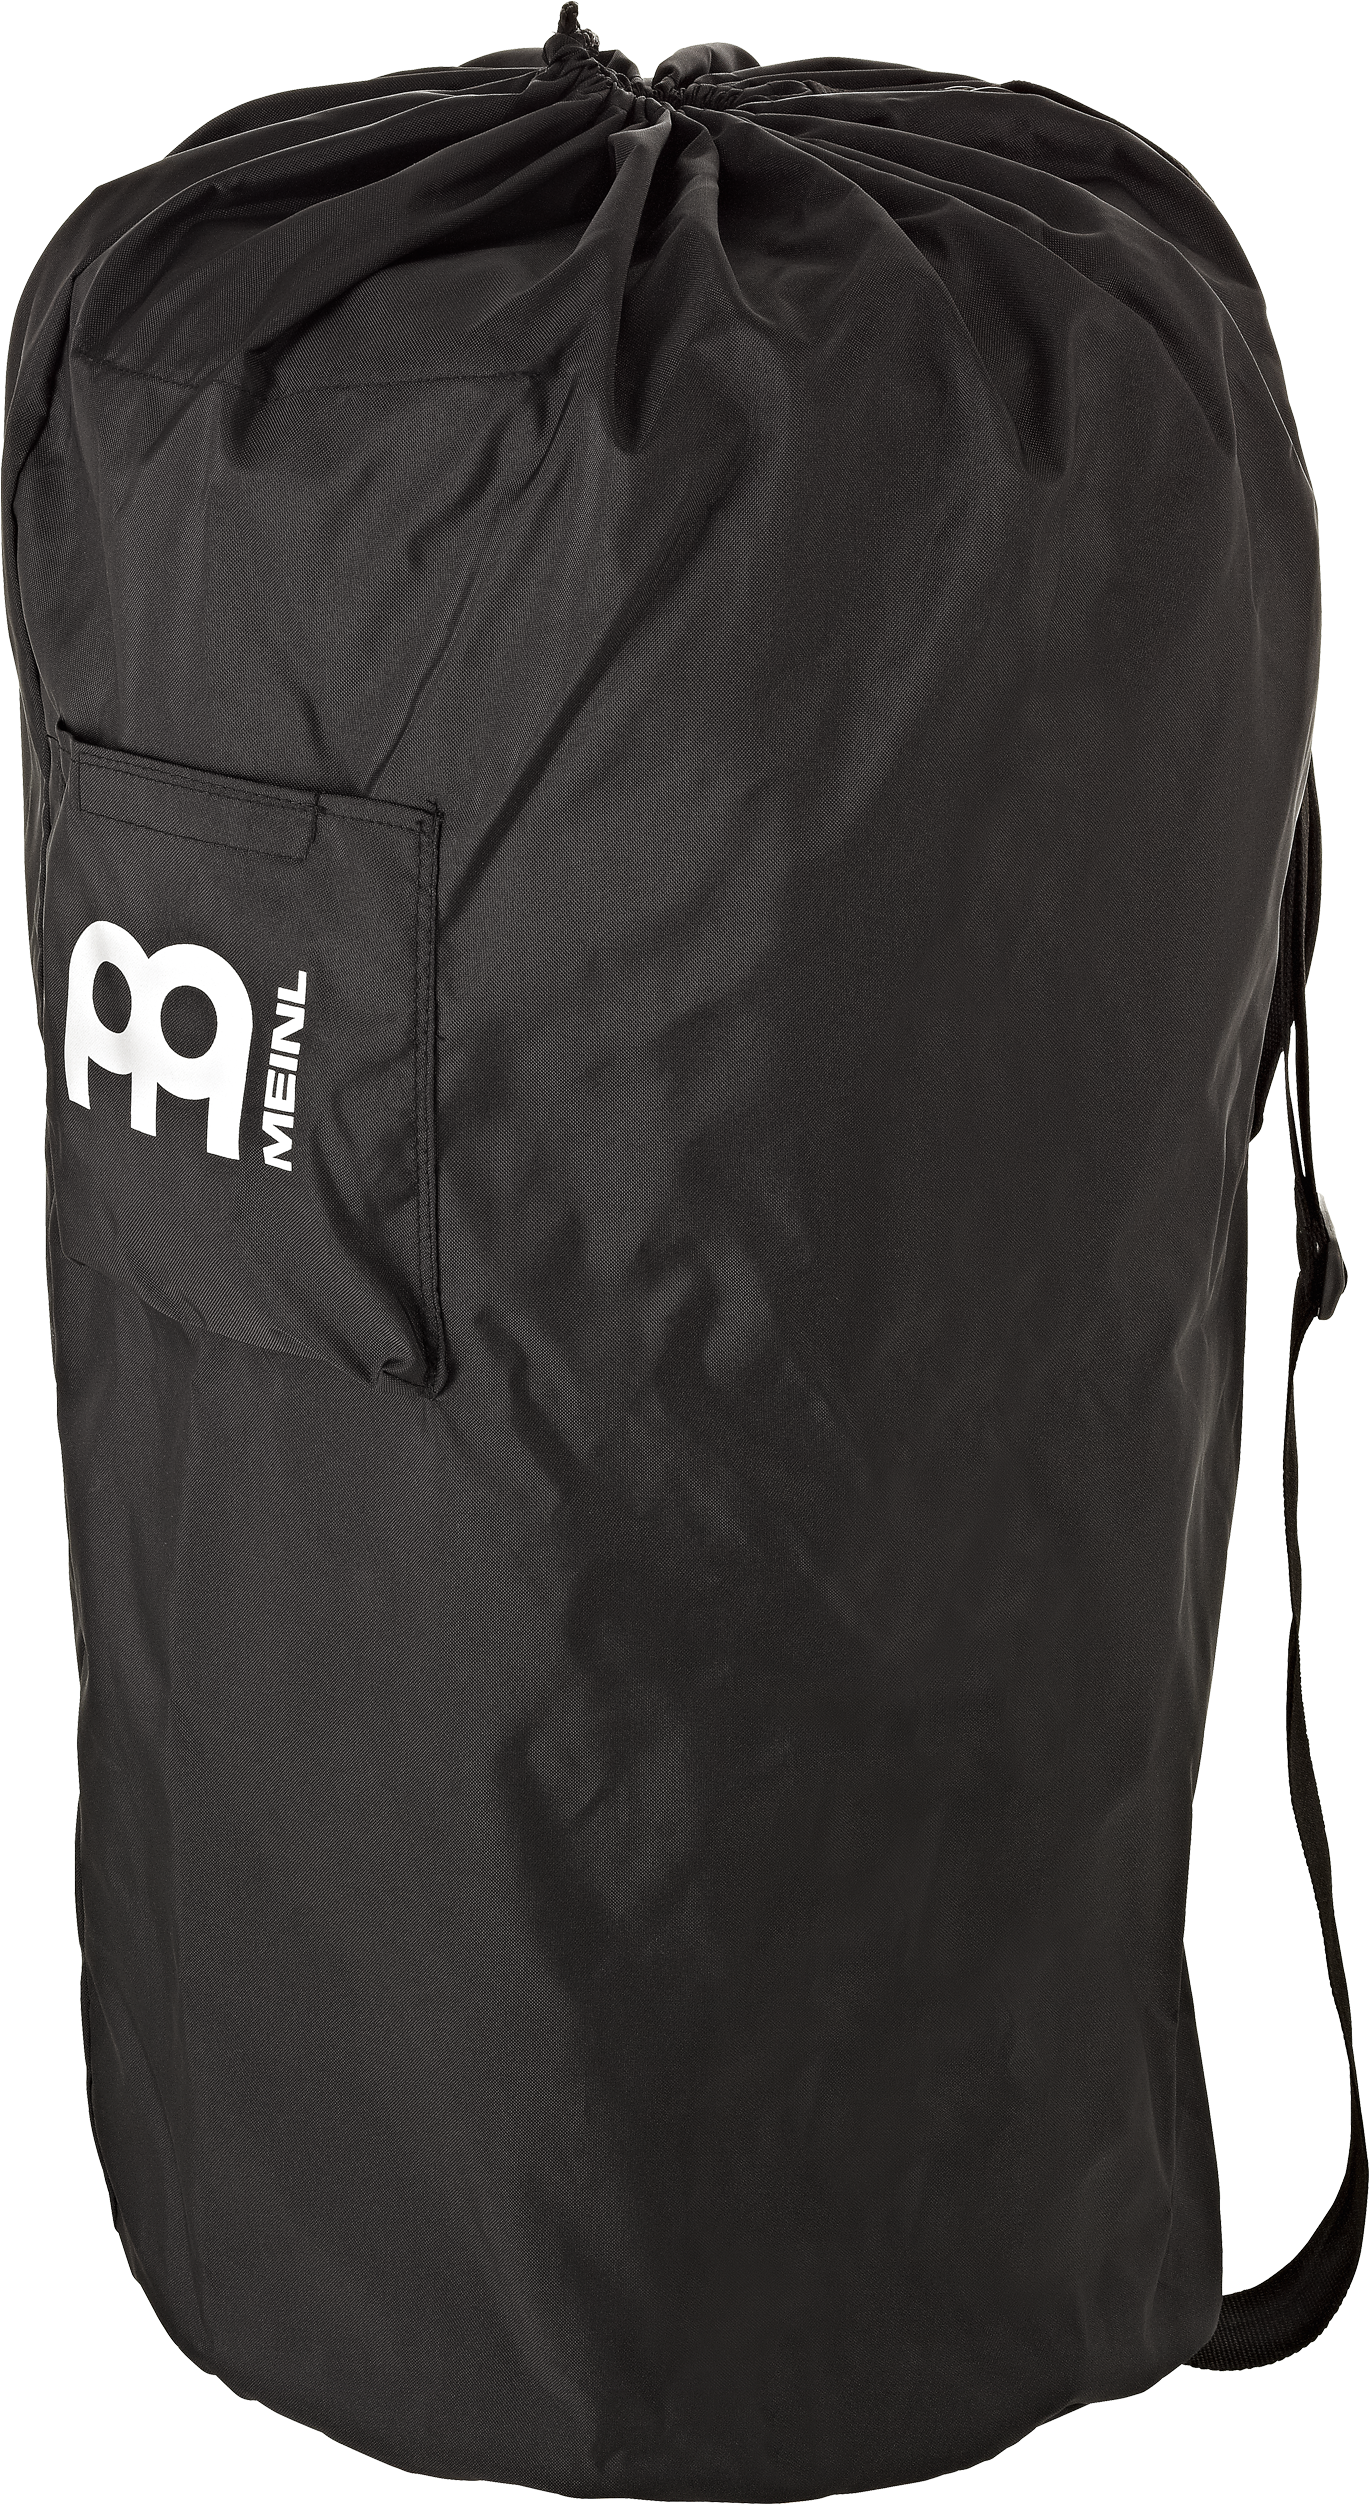 Conga Gig Bag - Meinl Conga Gig Bag Fits All Sizes (3600x2700), Png Download